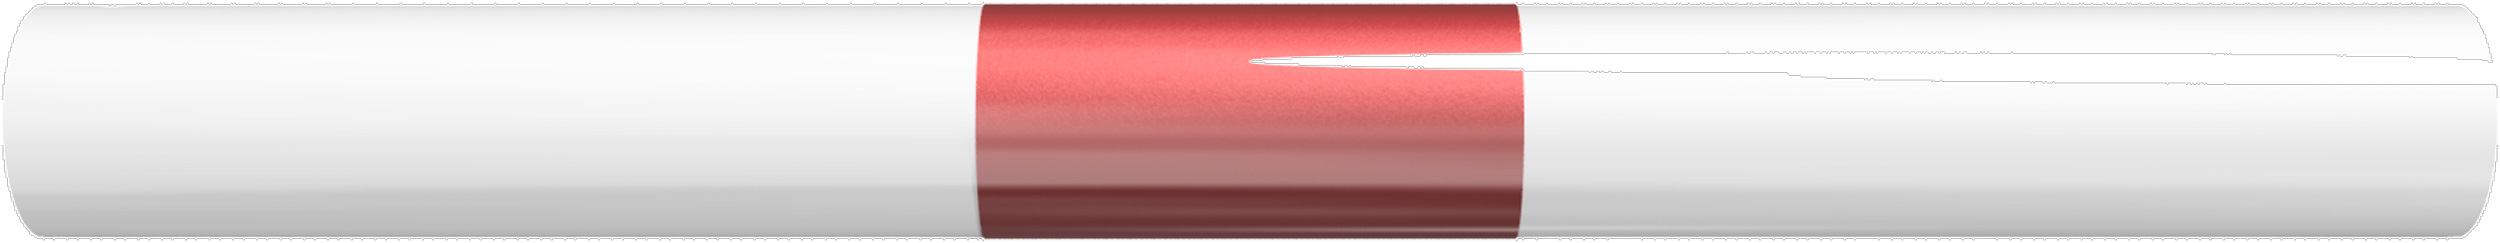 Schake Schutzgeländer Stahl Querholm Ø 48 mm weiß | rot - 500 mm